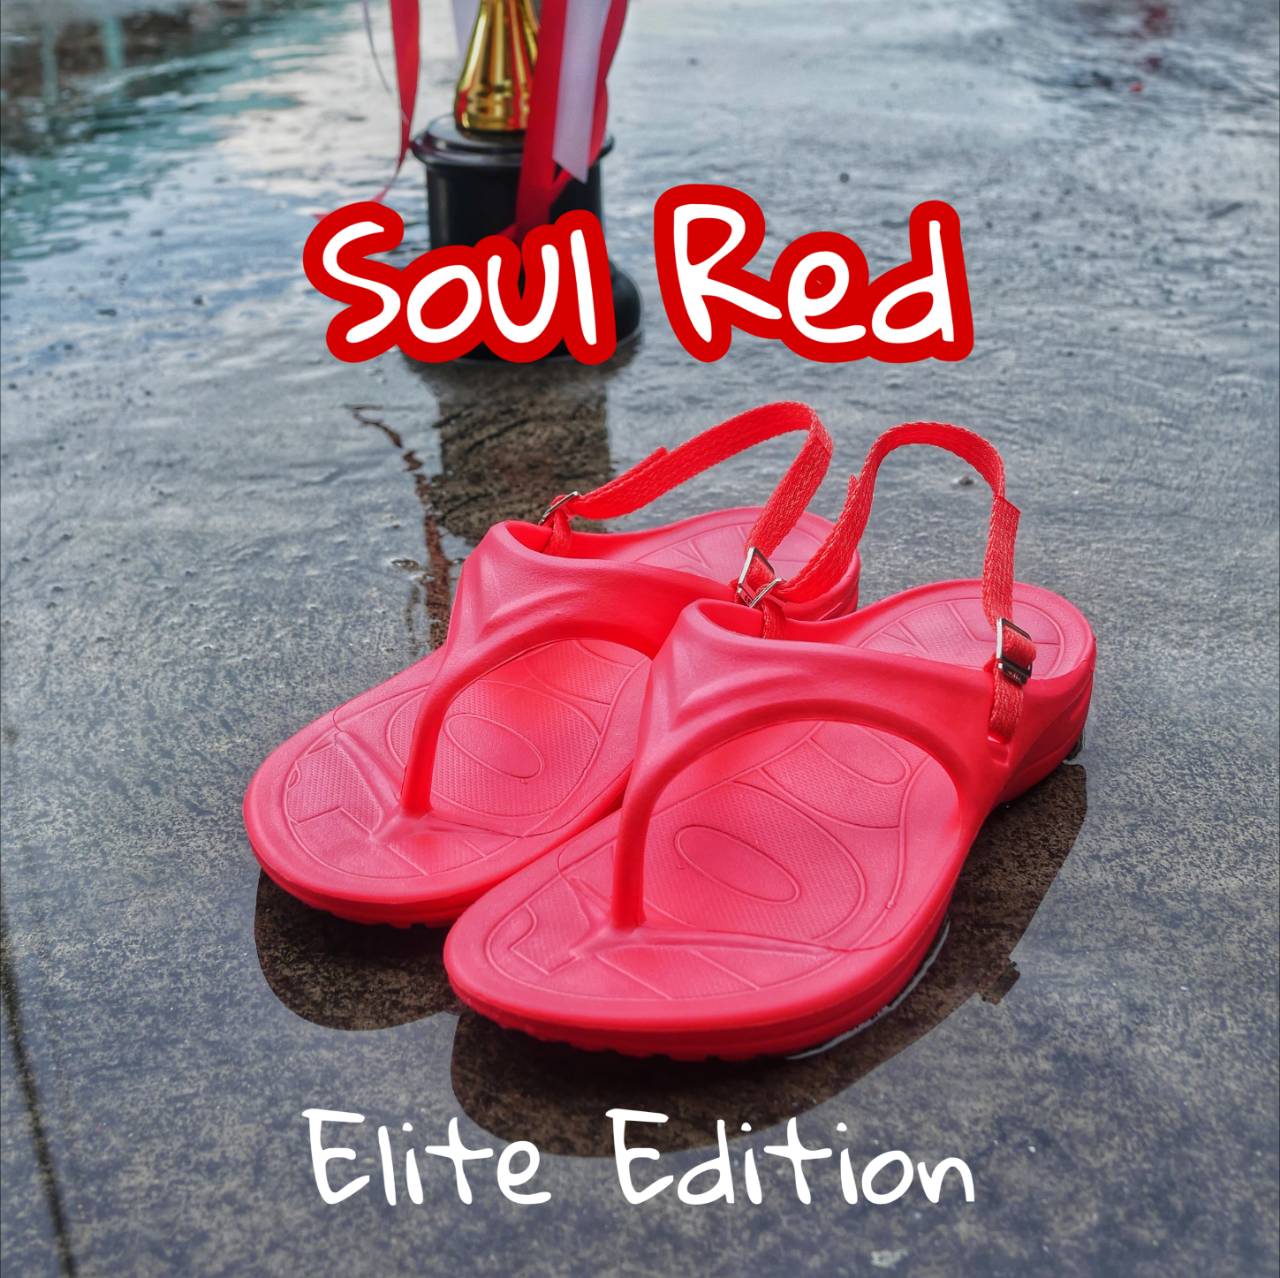 รองเท้าแตะวิ่งมาราธอน VING รุ่น 100K Elite - สีแดง Soul Red (รวมสายรัดข้อเท้า เลือกสีได้) Running Sandals - รองเท้าแตะสุขภาพ [ส่งฟรี]